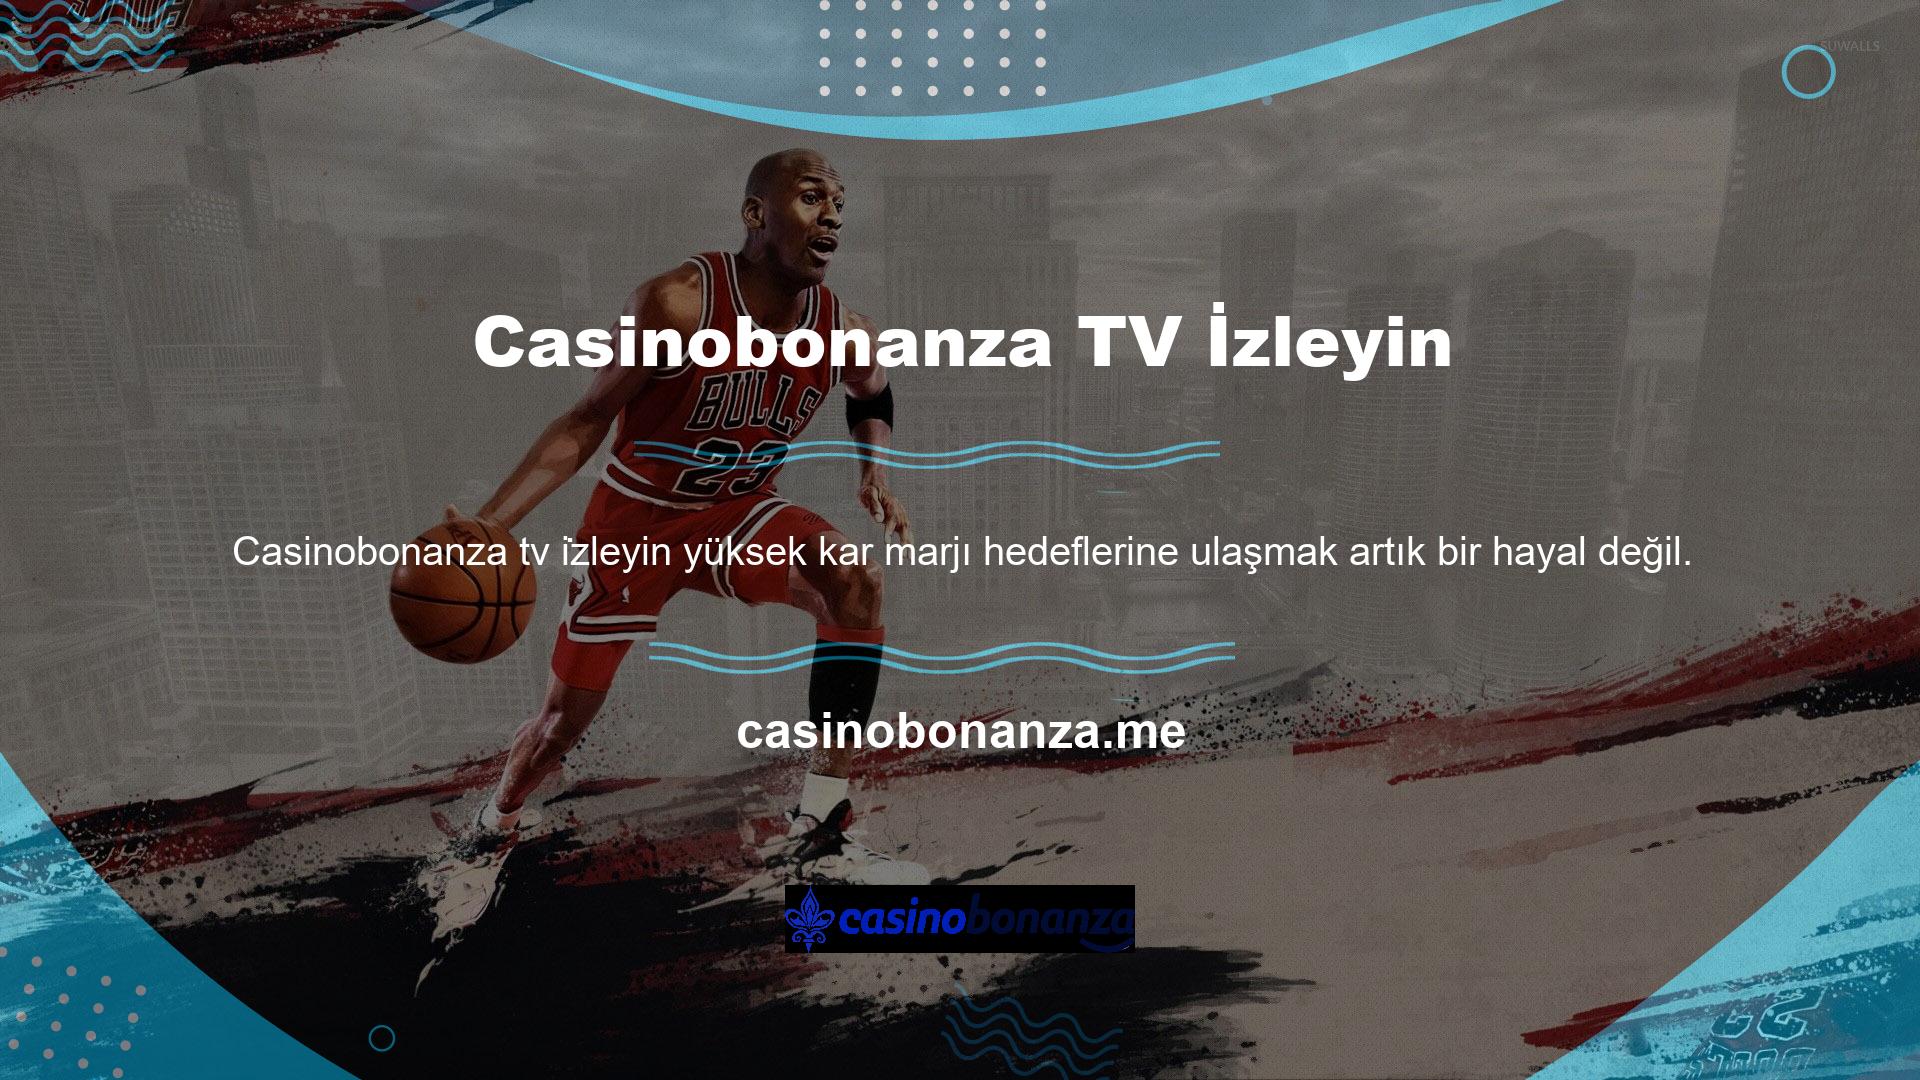 Casinobonanza, meşru sitelerde bulunmayan, zengin oyun içeriği ve tatmin edici ödülleri olan şikayetsiz sitelerden biridir